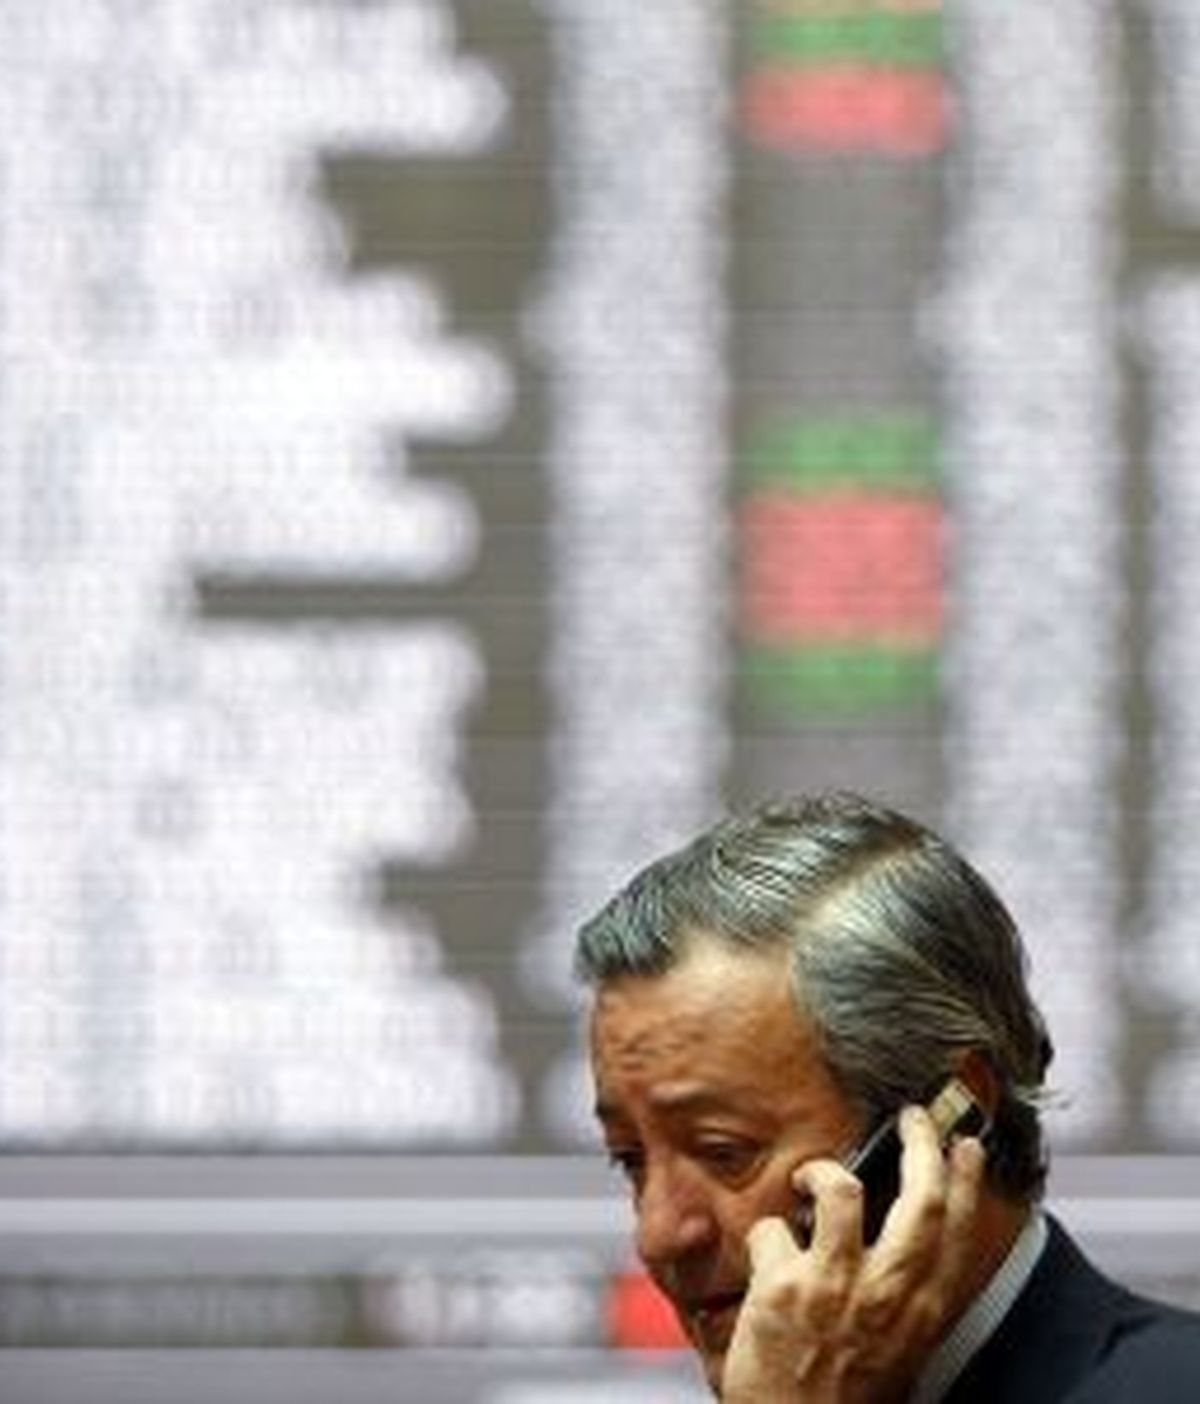 El Ibex 35 ha caído un 0,08 por ciento tras la subida de los tipos de interés y la colocación del Tesoro. Foto: Reuters.